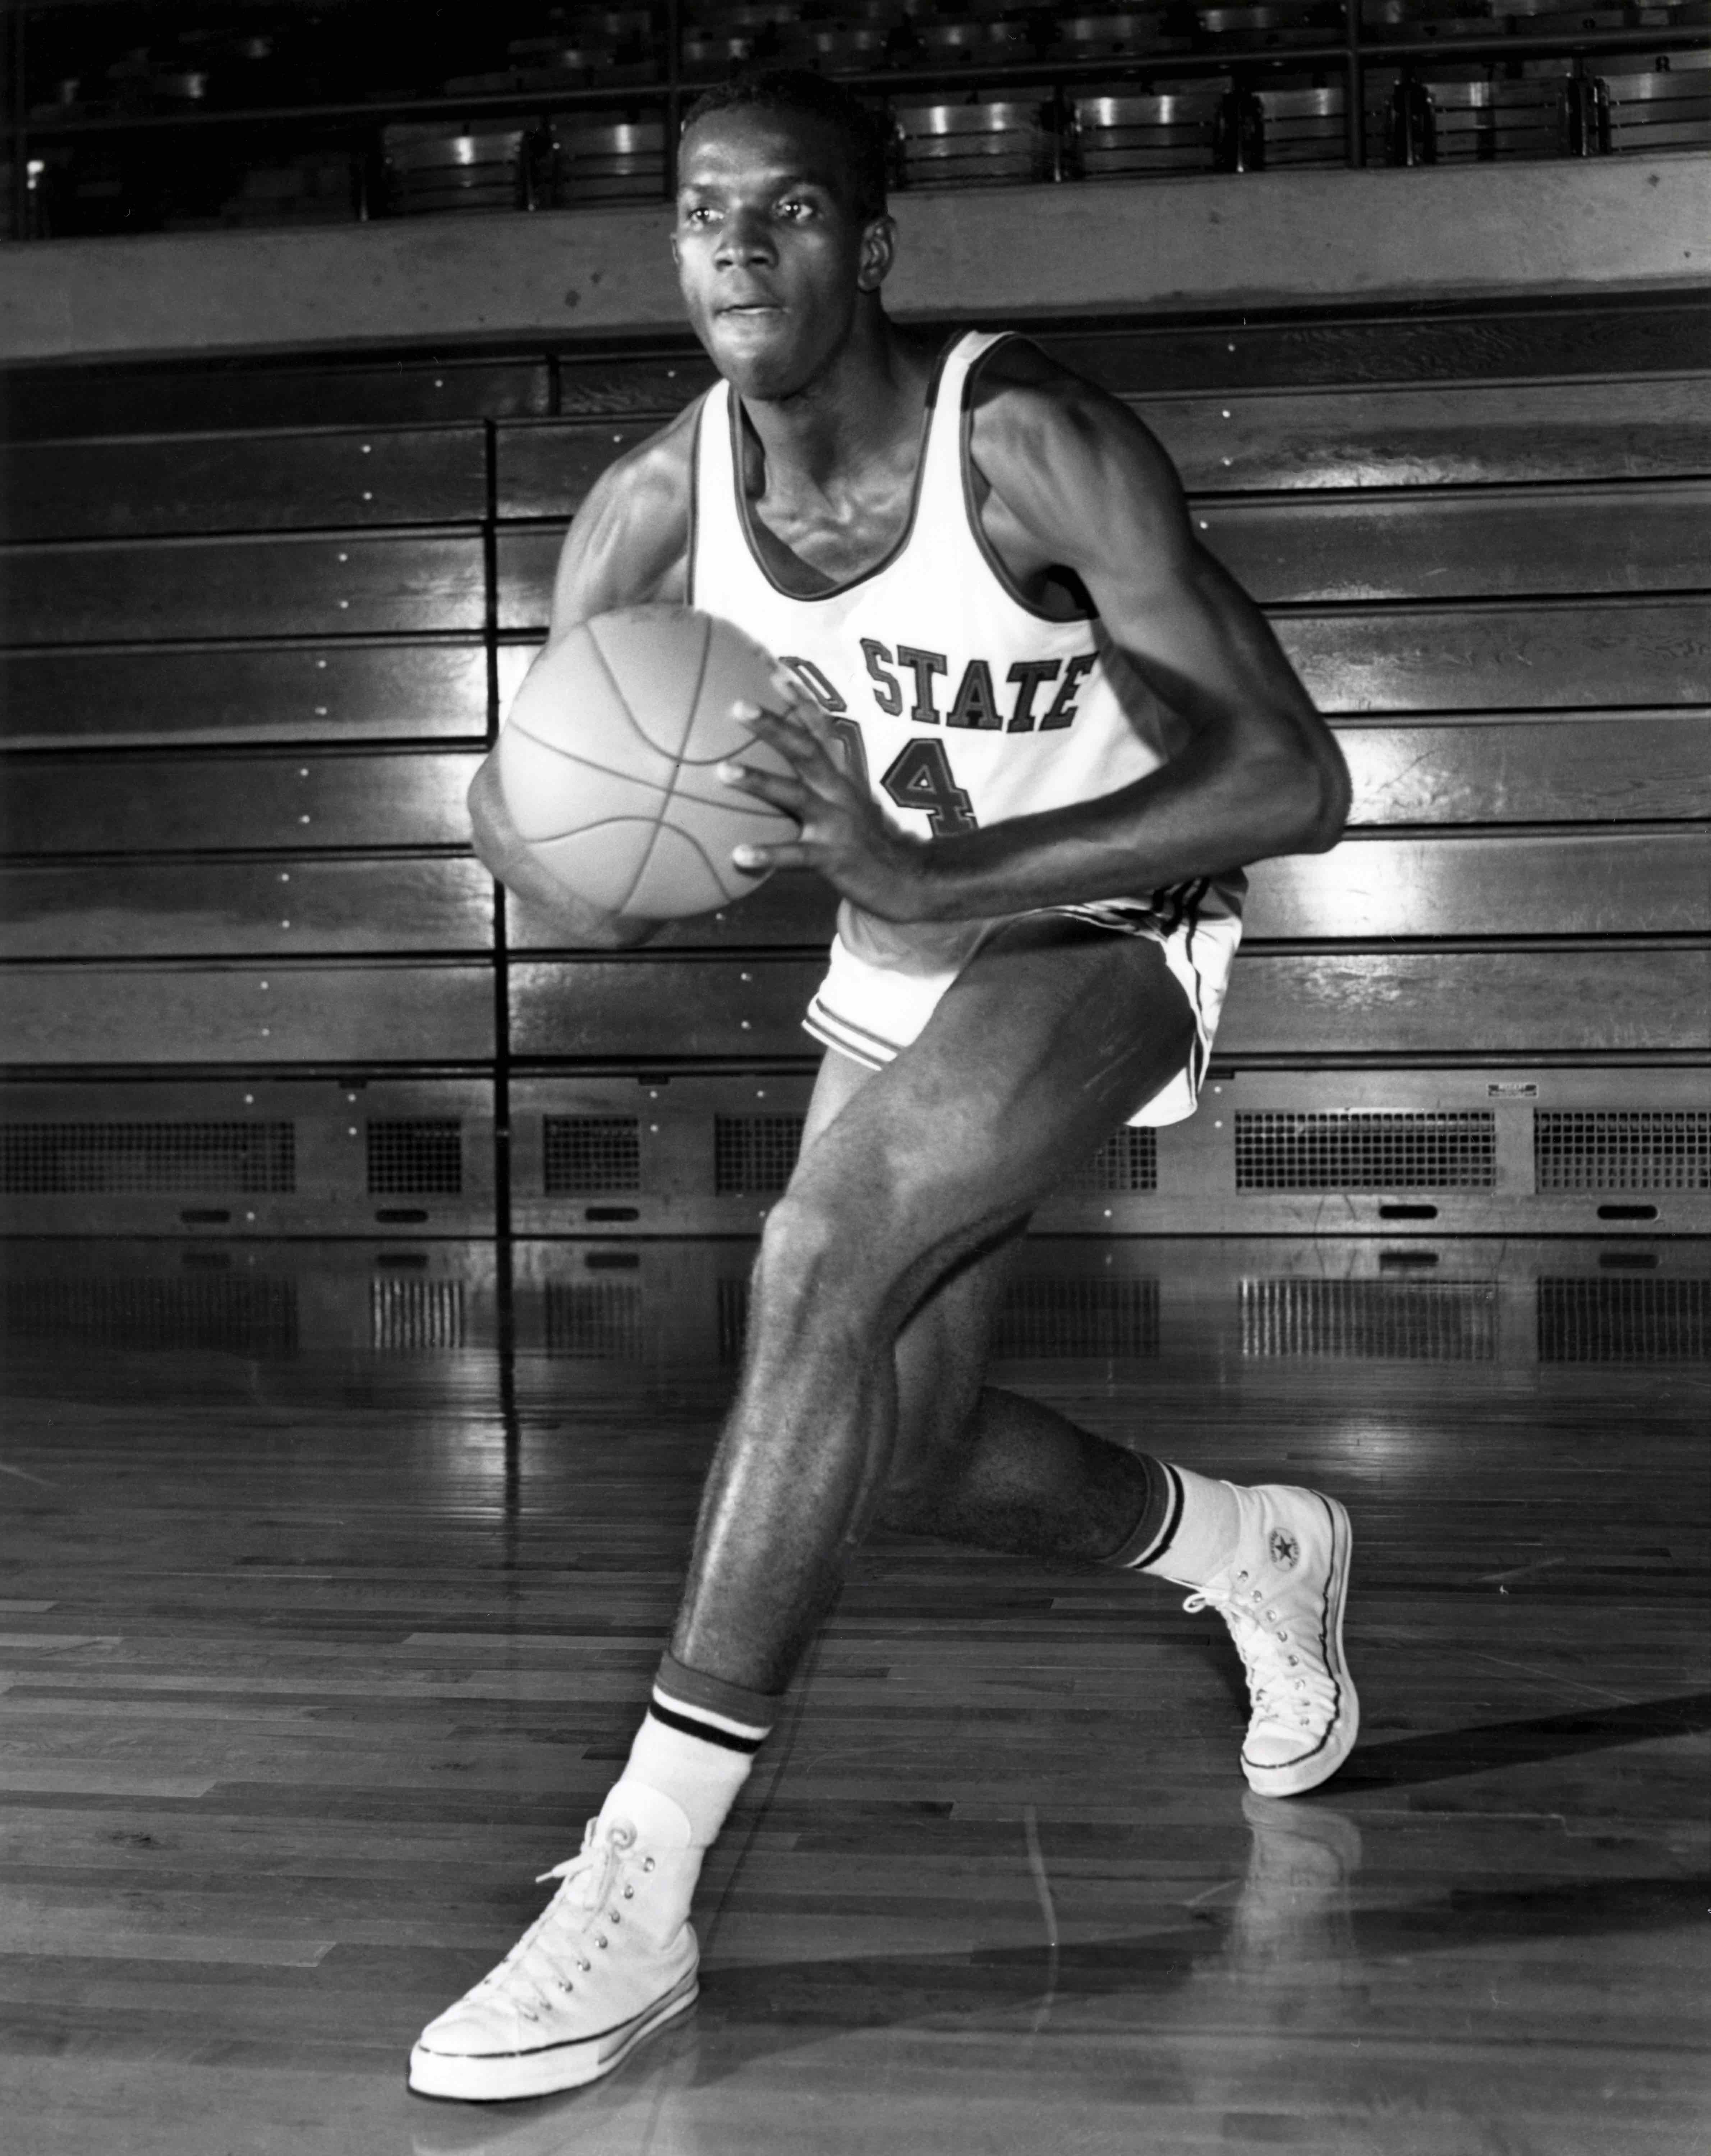 Joe Roberts playing basketball for Ohio State